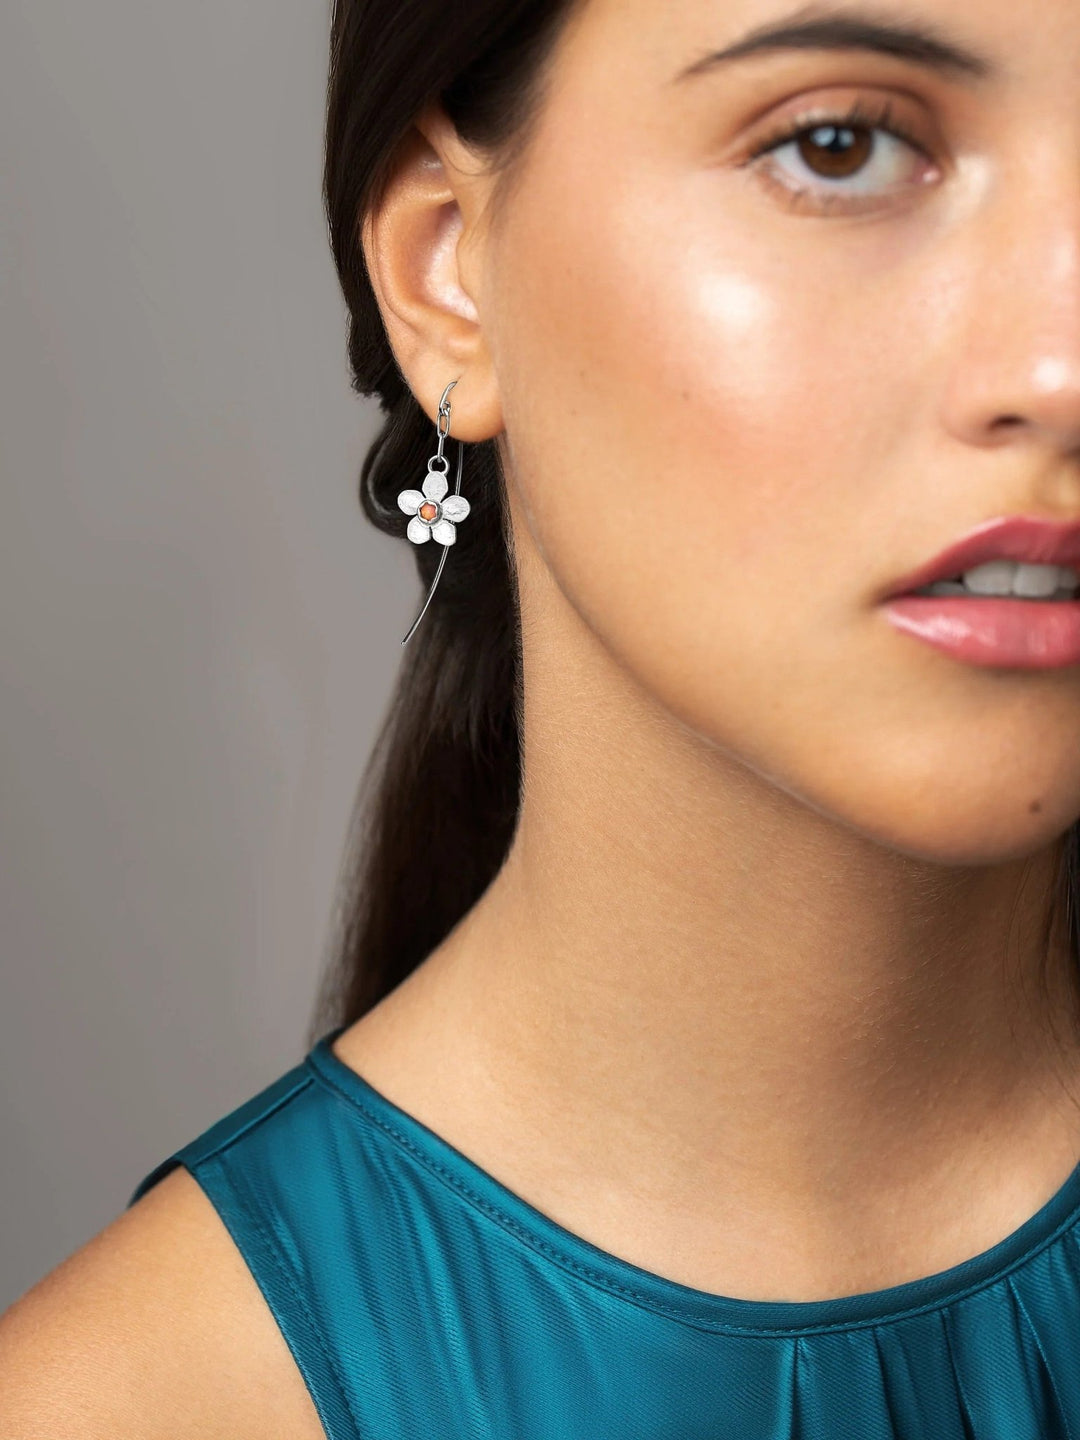 Tracey Dangle Earrings with Flower Charm - Red Granate24k Gold Matteboho earringschandelier earringsLunai Jewelry